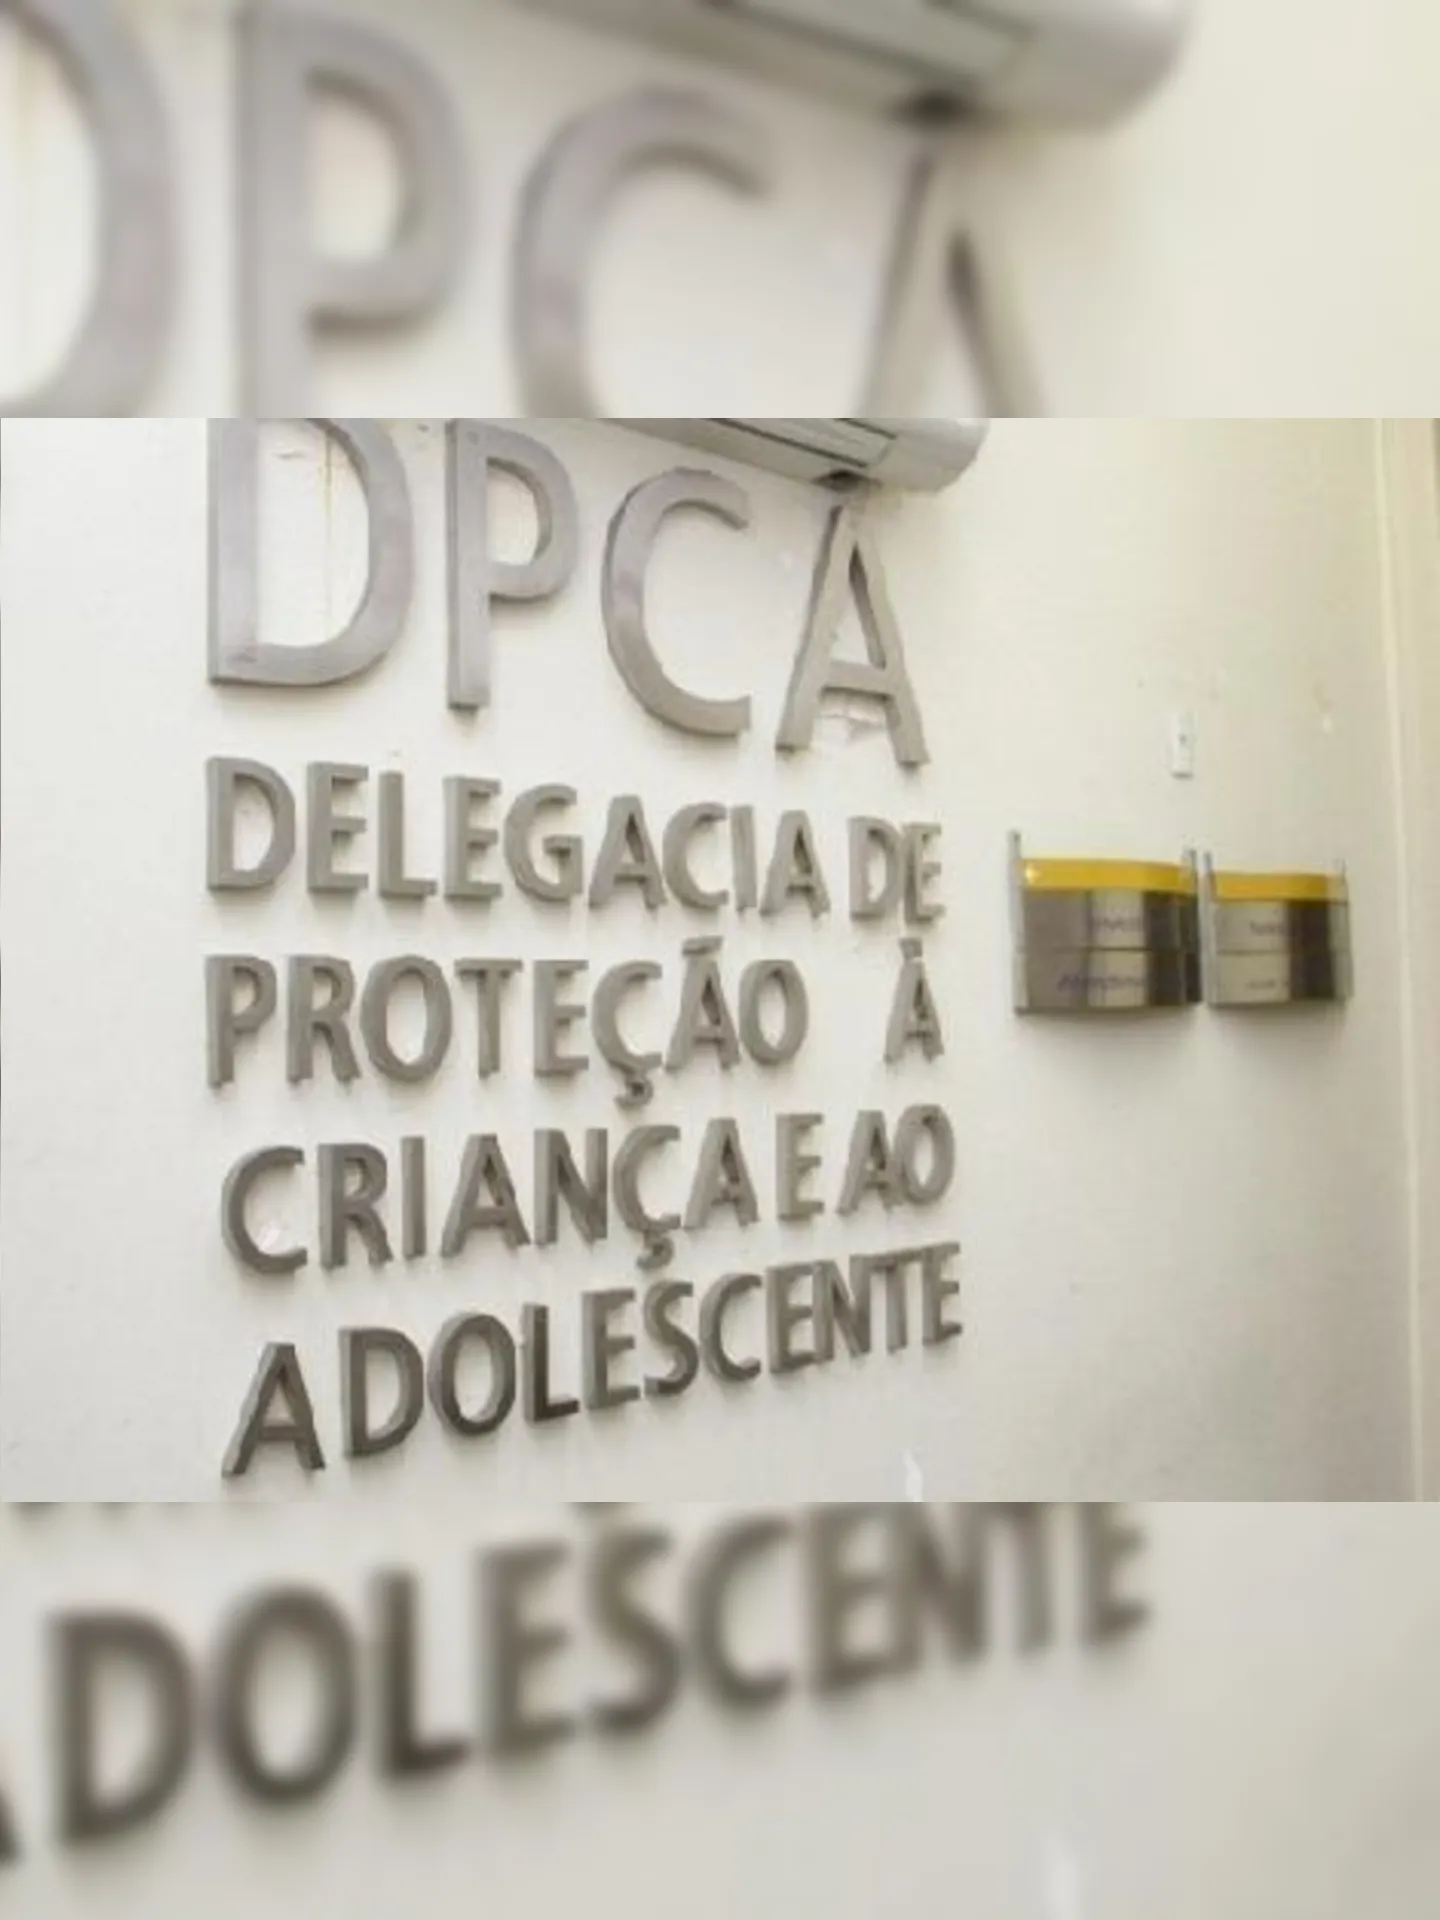 O acusado foi preso por policiais da DPCA-Niterói